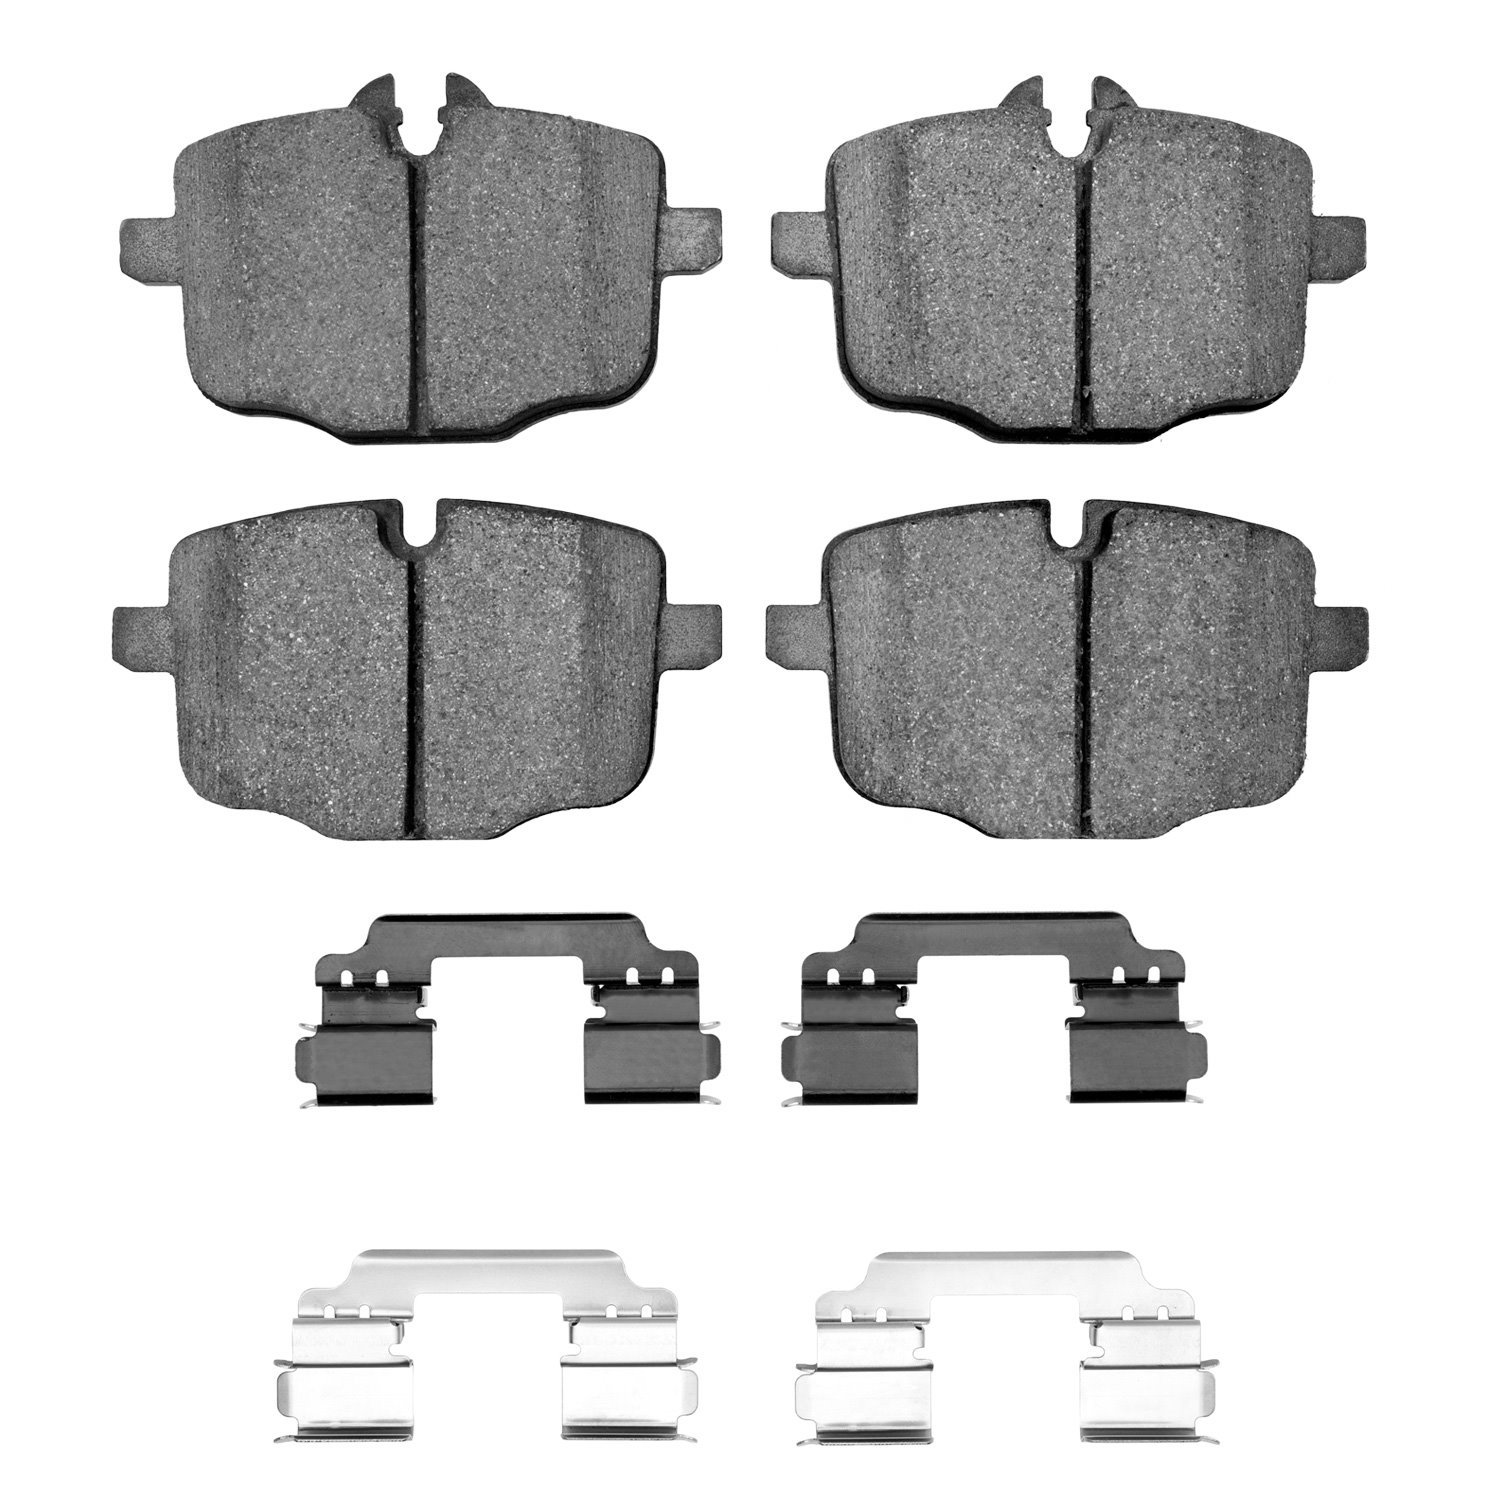 Euro Ceramic Brake Pads & Hardware Kit, 2012-2019 BMW, Position: Rear